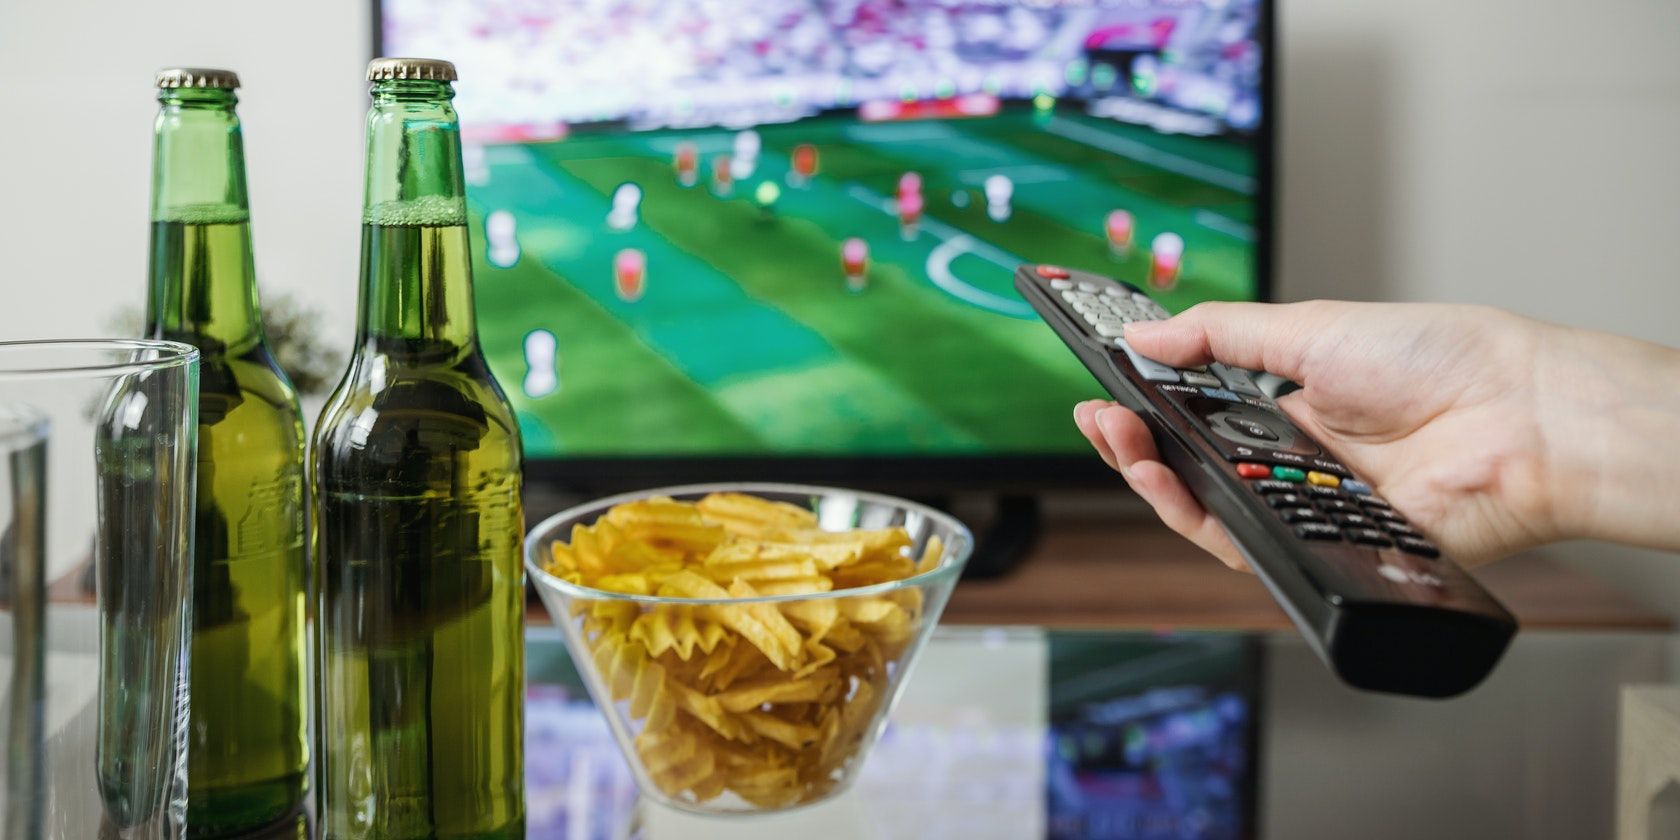 Des collations, des boissons et une main tenant une télécommande devant un écran de télévision diffusant un match de football